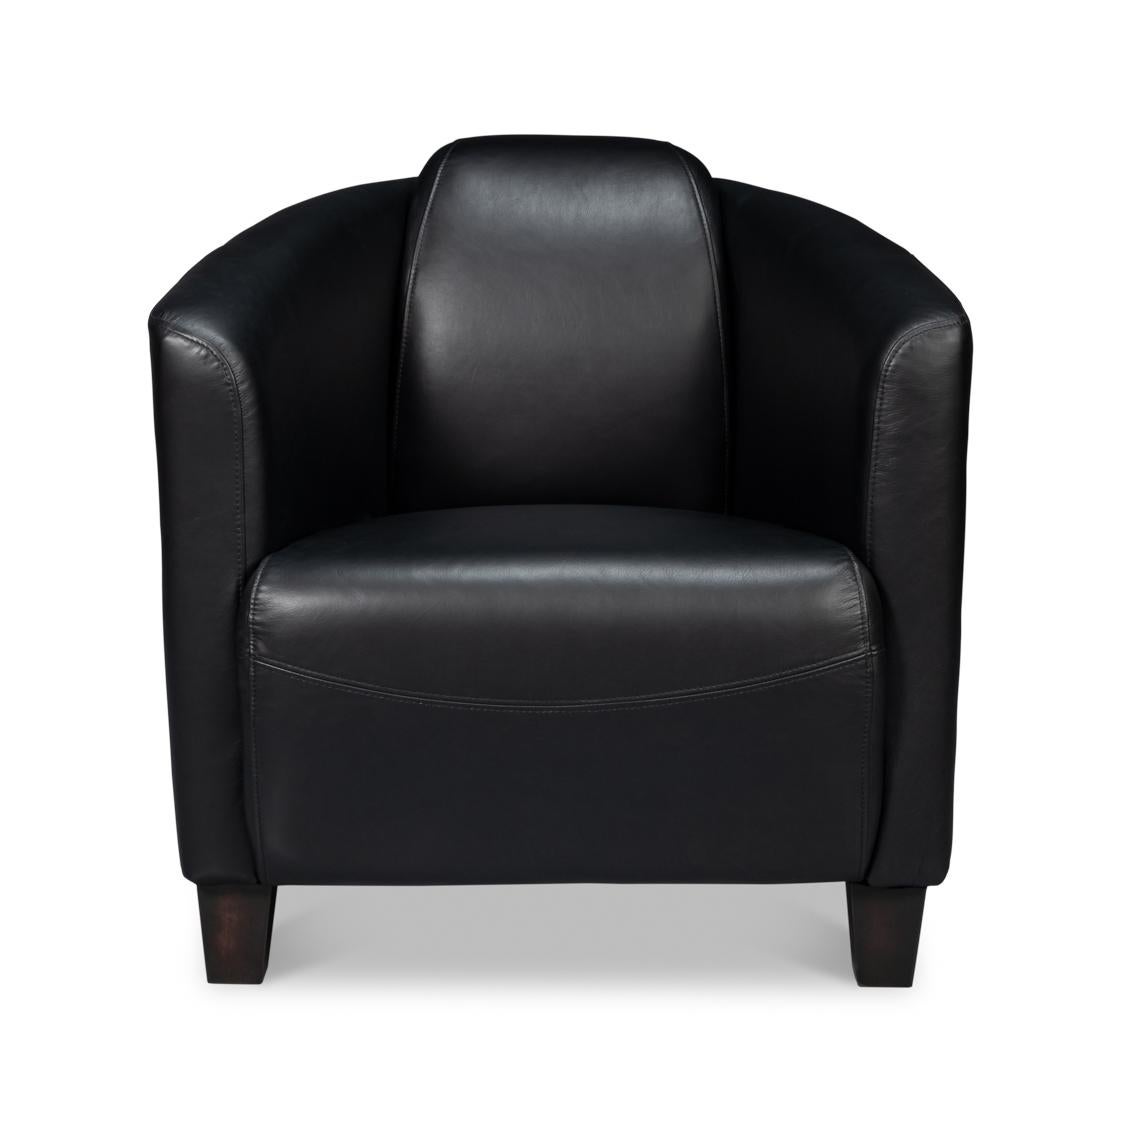 Dieser elegante und bequeme Sessel aus luxuriösem Leder in schlichtem Schwarz ist perfekt für Ihr DEN, Ihre Bibliothek oder Ihr Wohnzimmer.
Farbabweichungen sind bei altem Leder üblich und akzeptabel.
Abmessungen: 28